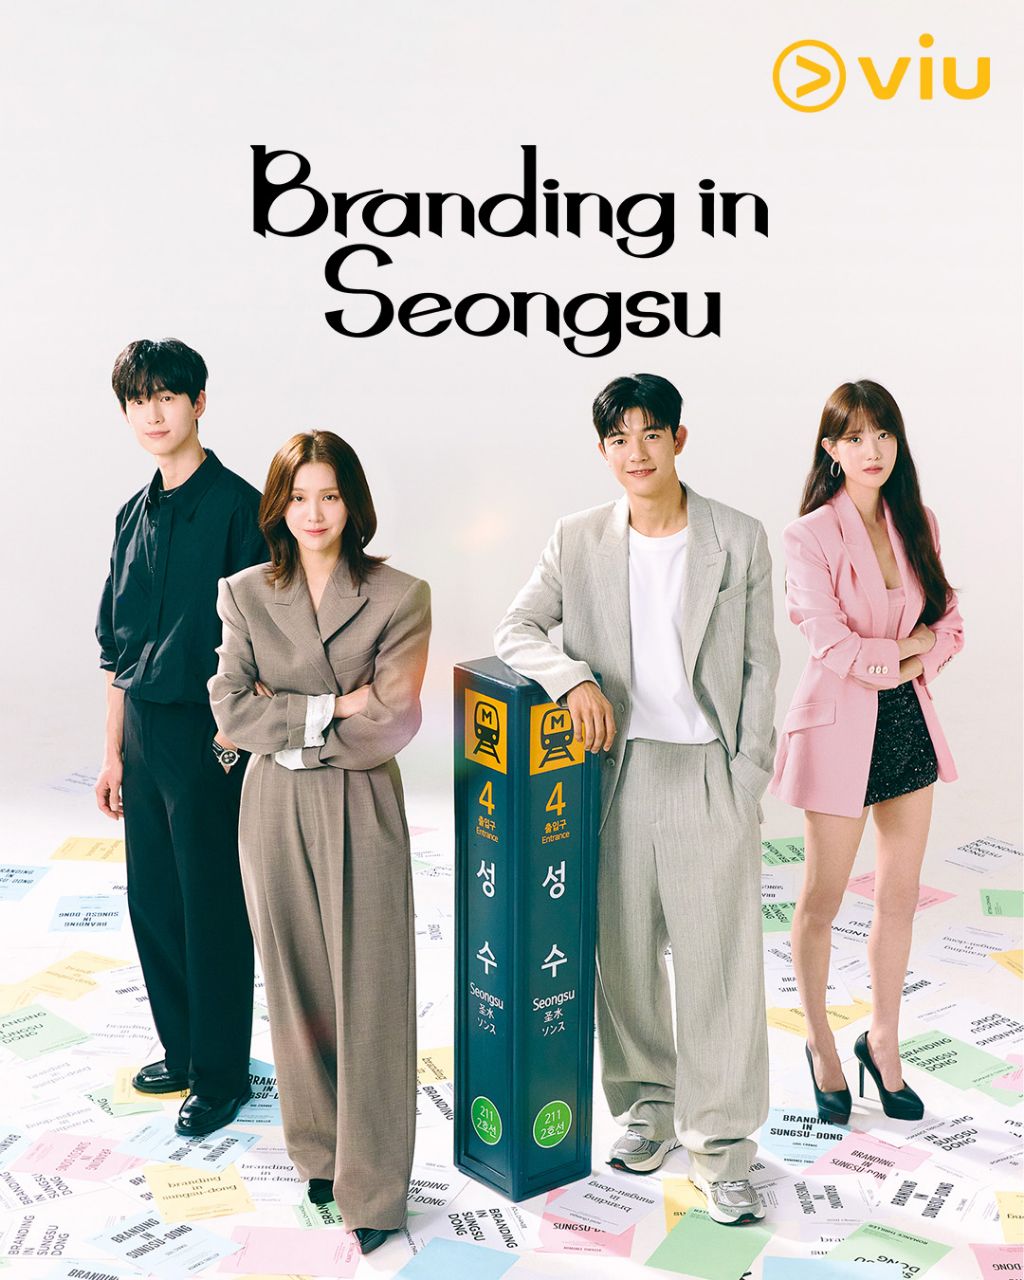 مسلسل العلامة التجارية في سيونغسو Branding in Seongsu الحلقة 20